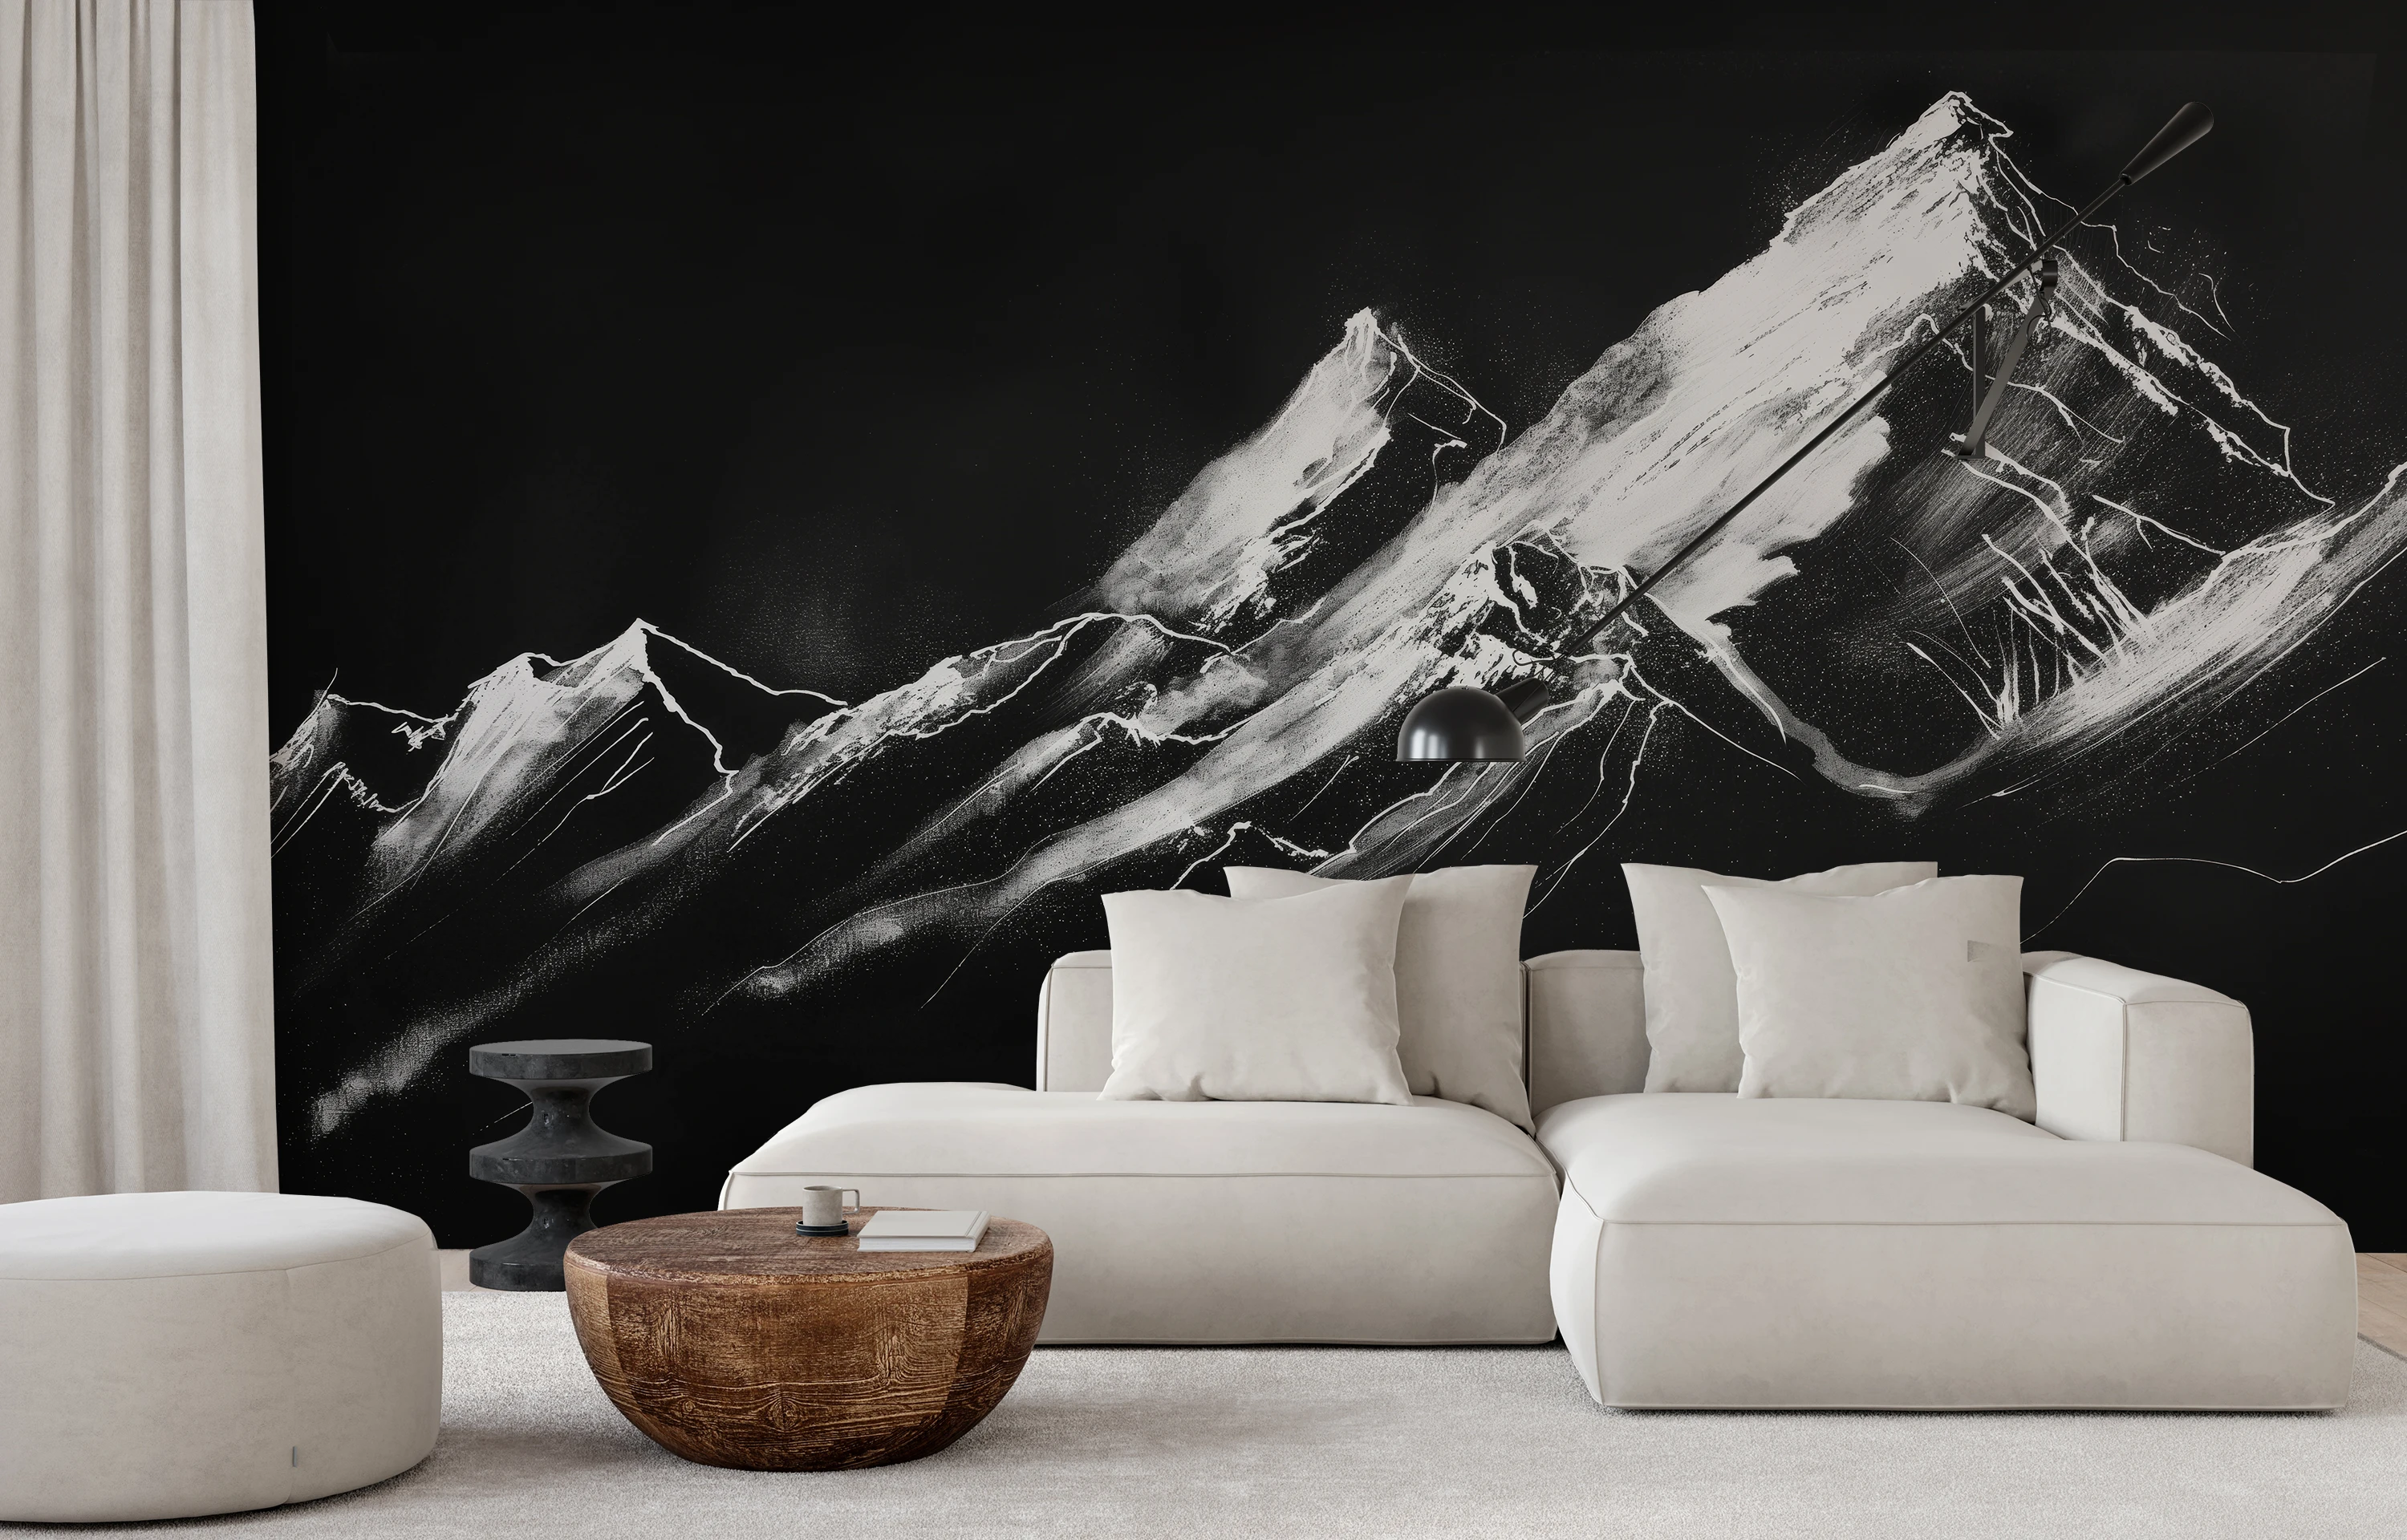 Czarno-biała fototapeta z dynamicznym portretem gór, której grze światła i cieni dodaje przestrzeni nowoczesnego, monochromatycznego wyglądu.